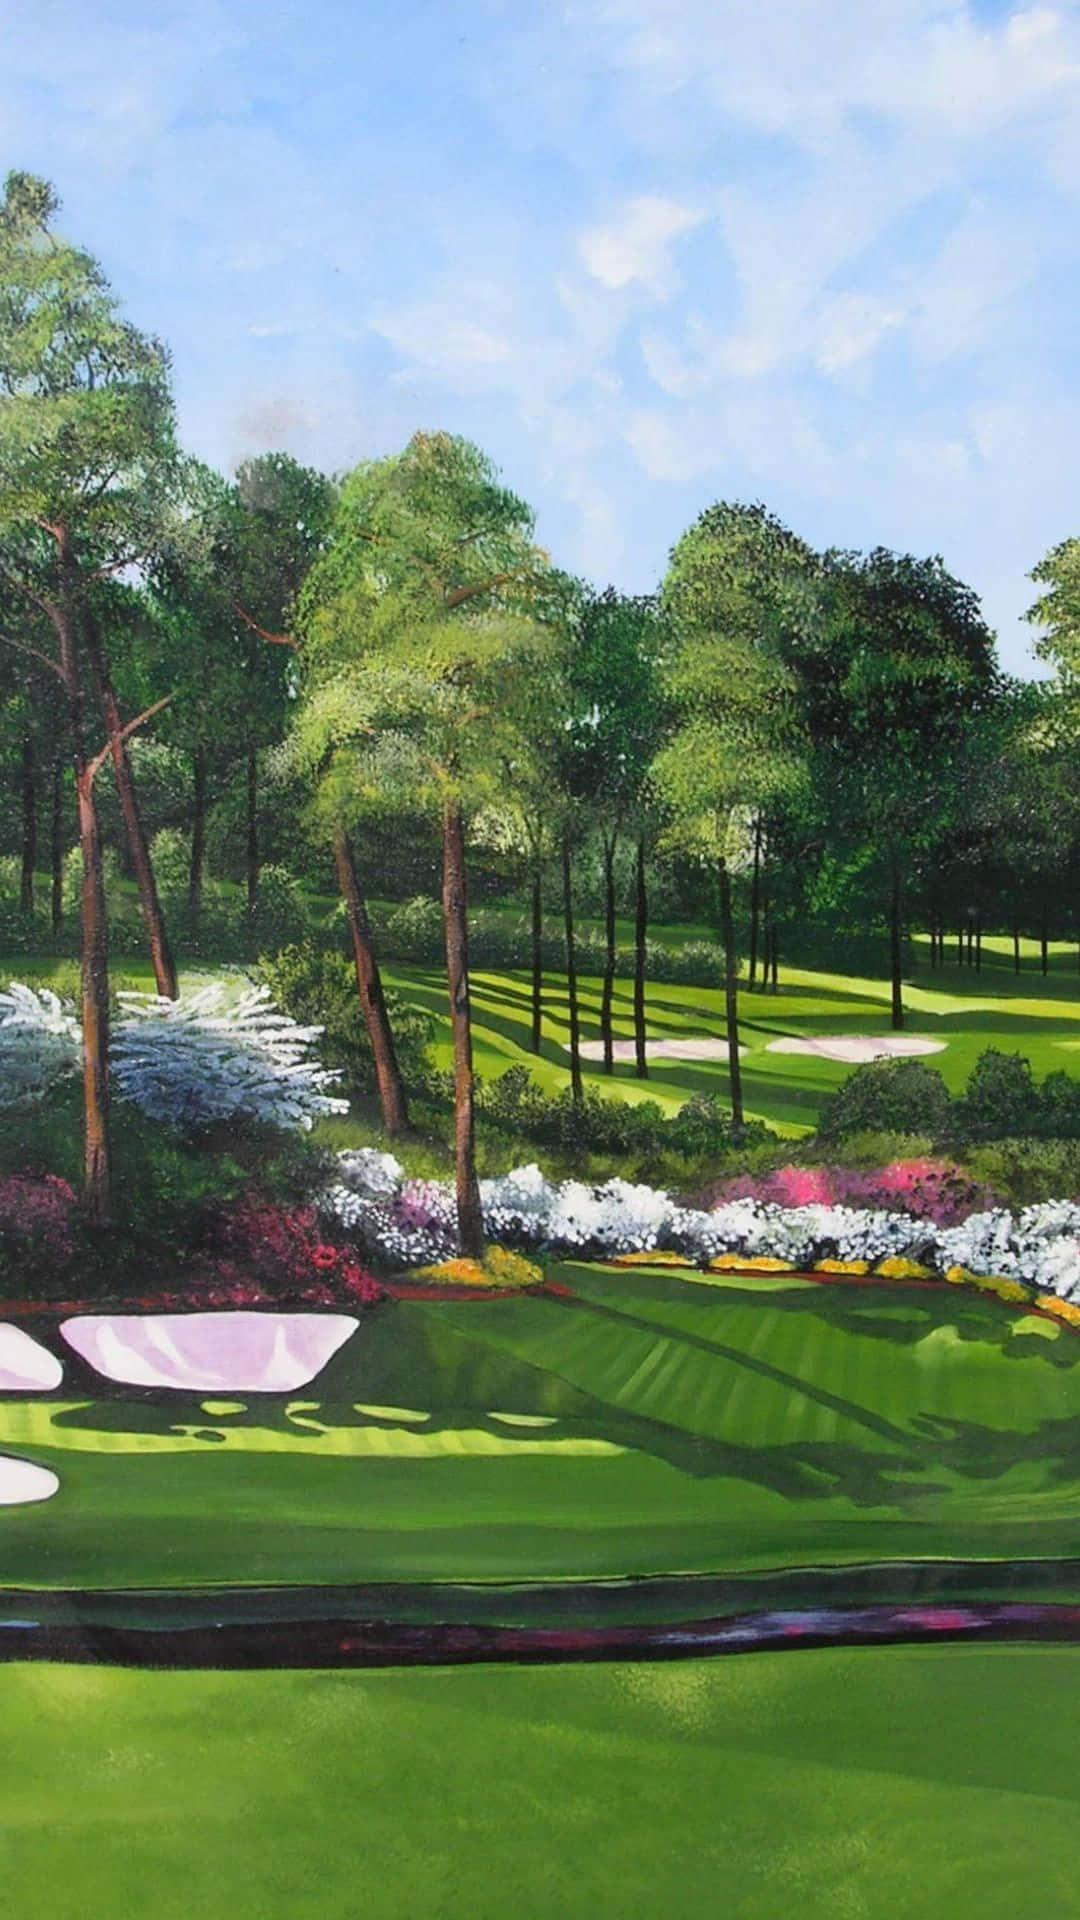 En maleri af en golfbane med træer og grønt græs Wallpaper